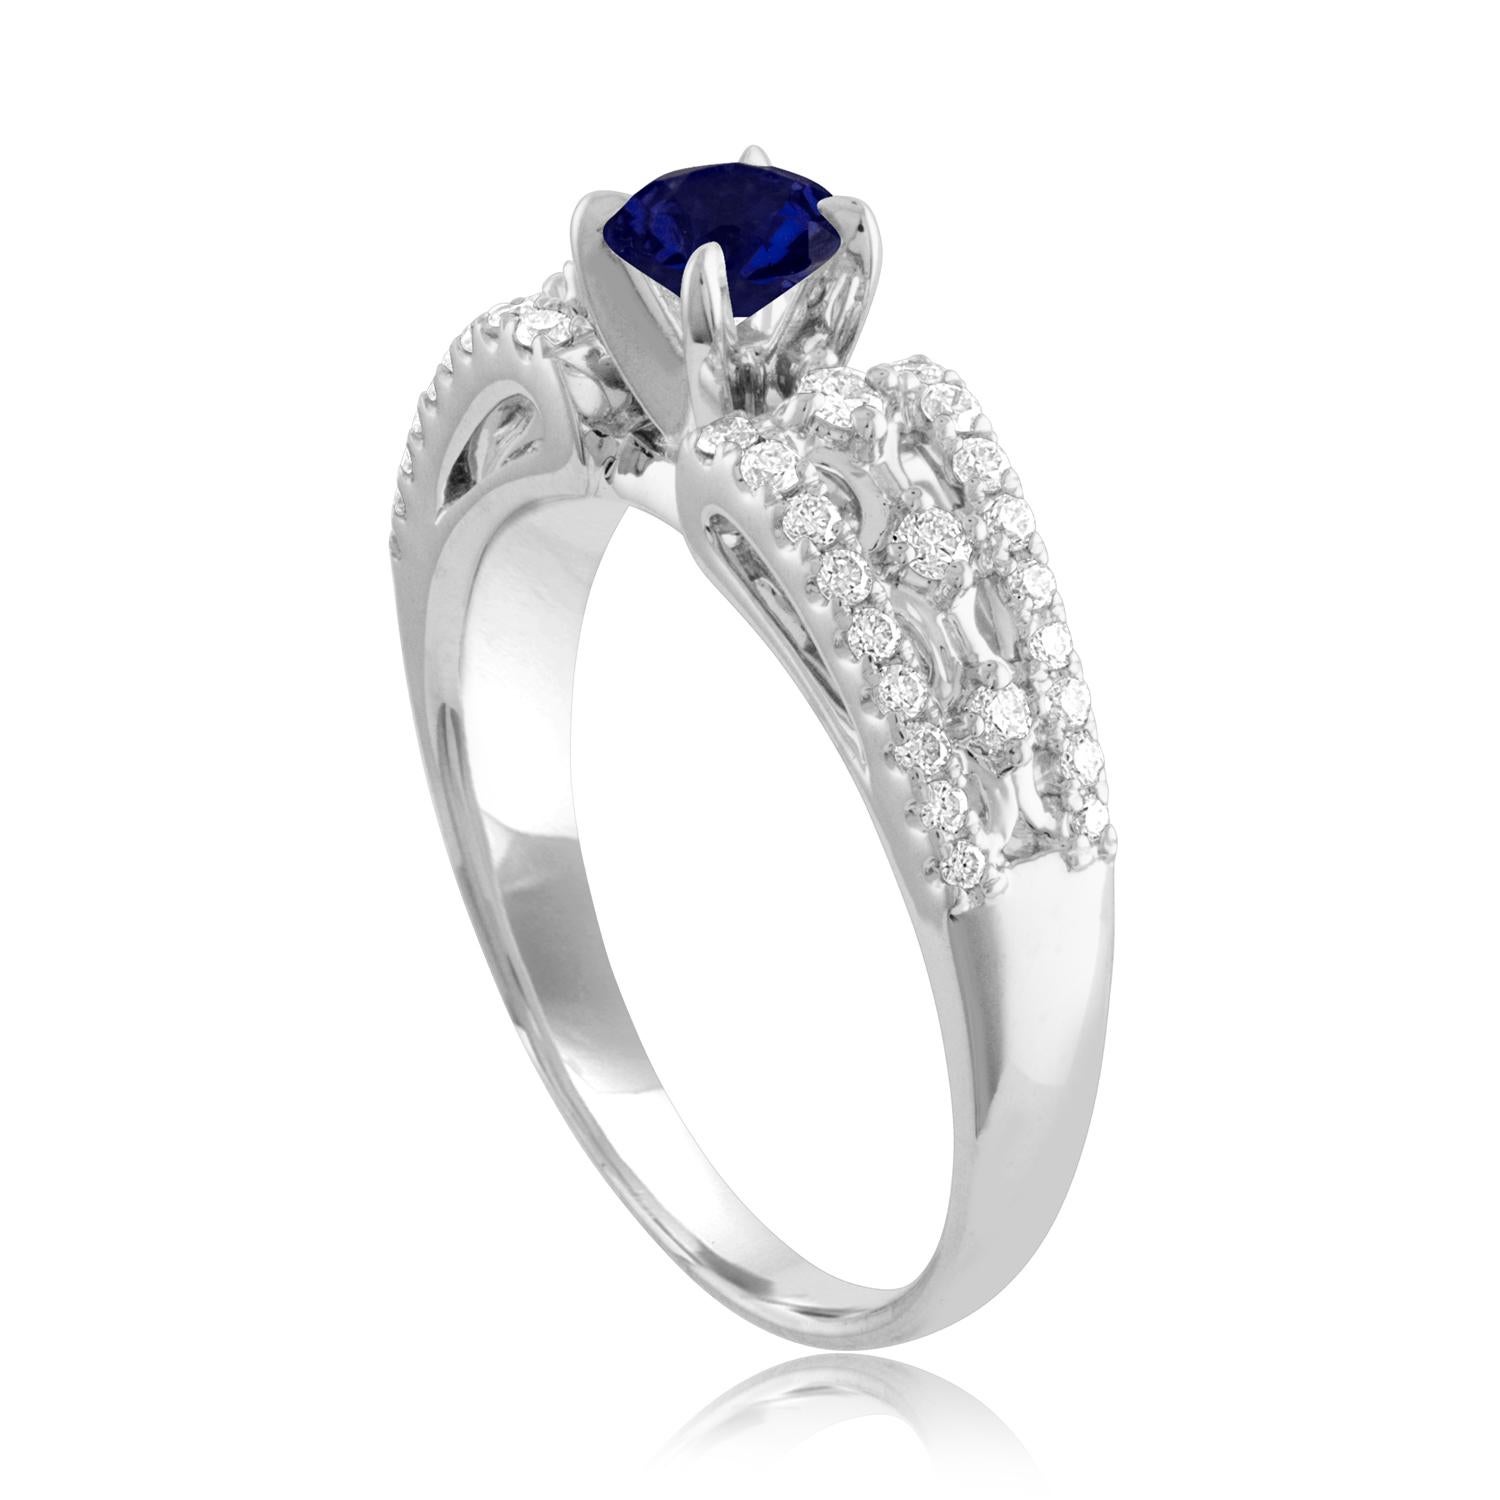 Schöner Saphir Ring
Der Ring ist aus 18K Weißgold
Der Mittelstein ist ein runder blauer Saphir 0,80 Karat
Der Sapphire ist AGL-zertifiziert beheizt
Es sind 0.33 Karat in Diamanten F/G VS/SI
Der Ring ist eine Größe 6,75, sizable
Der Ring wiegt 4.8